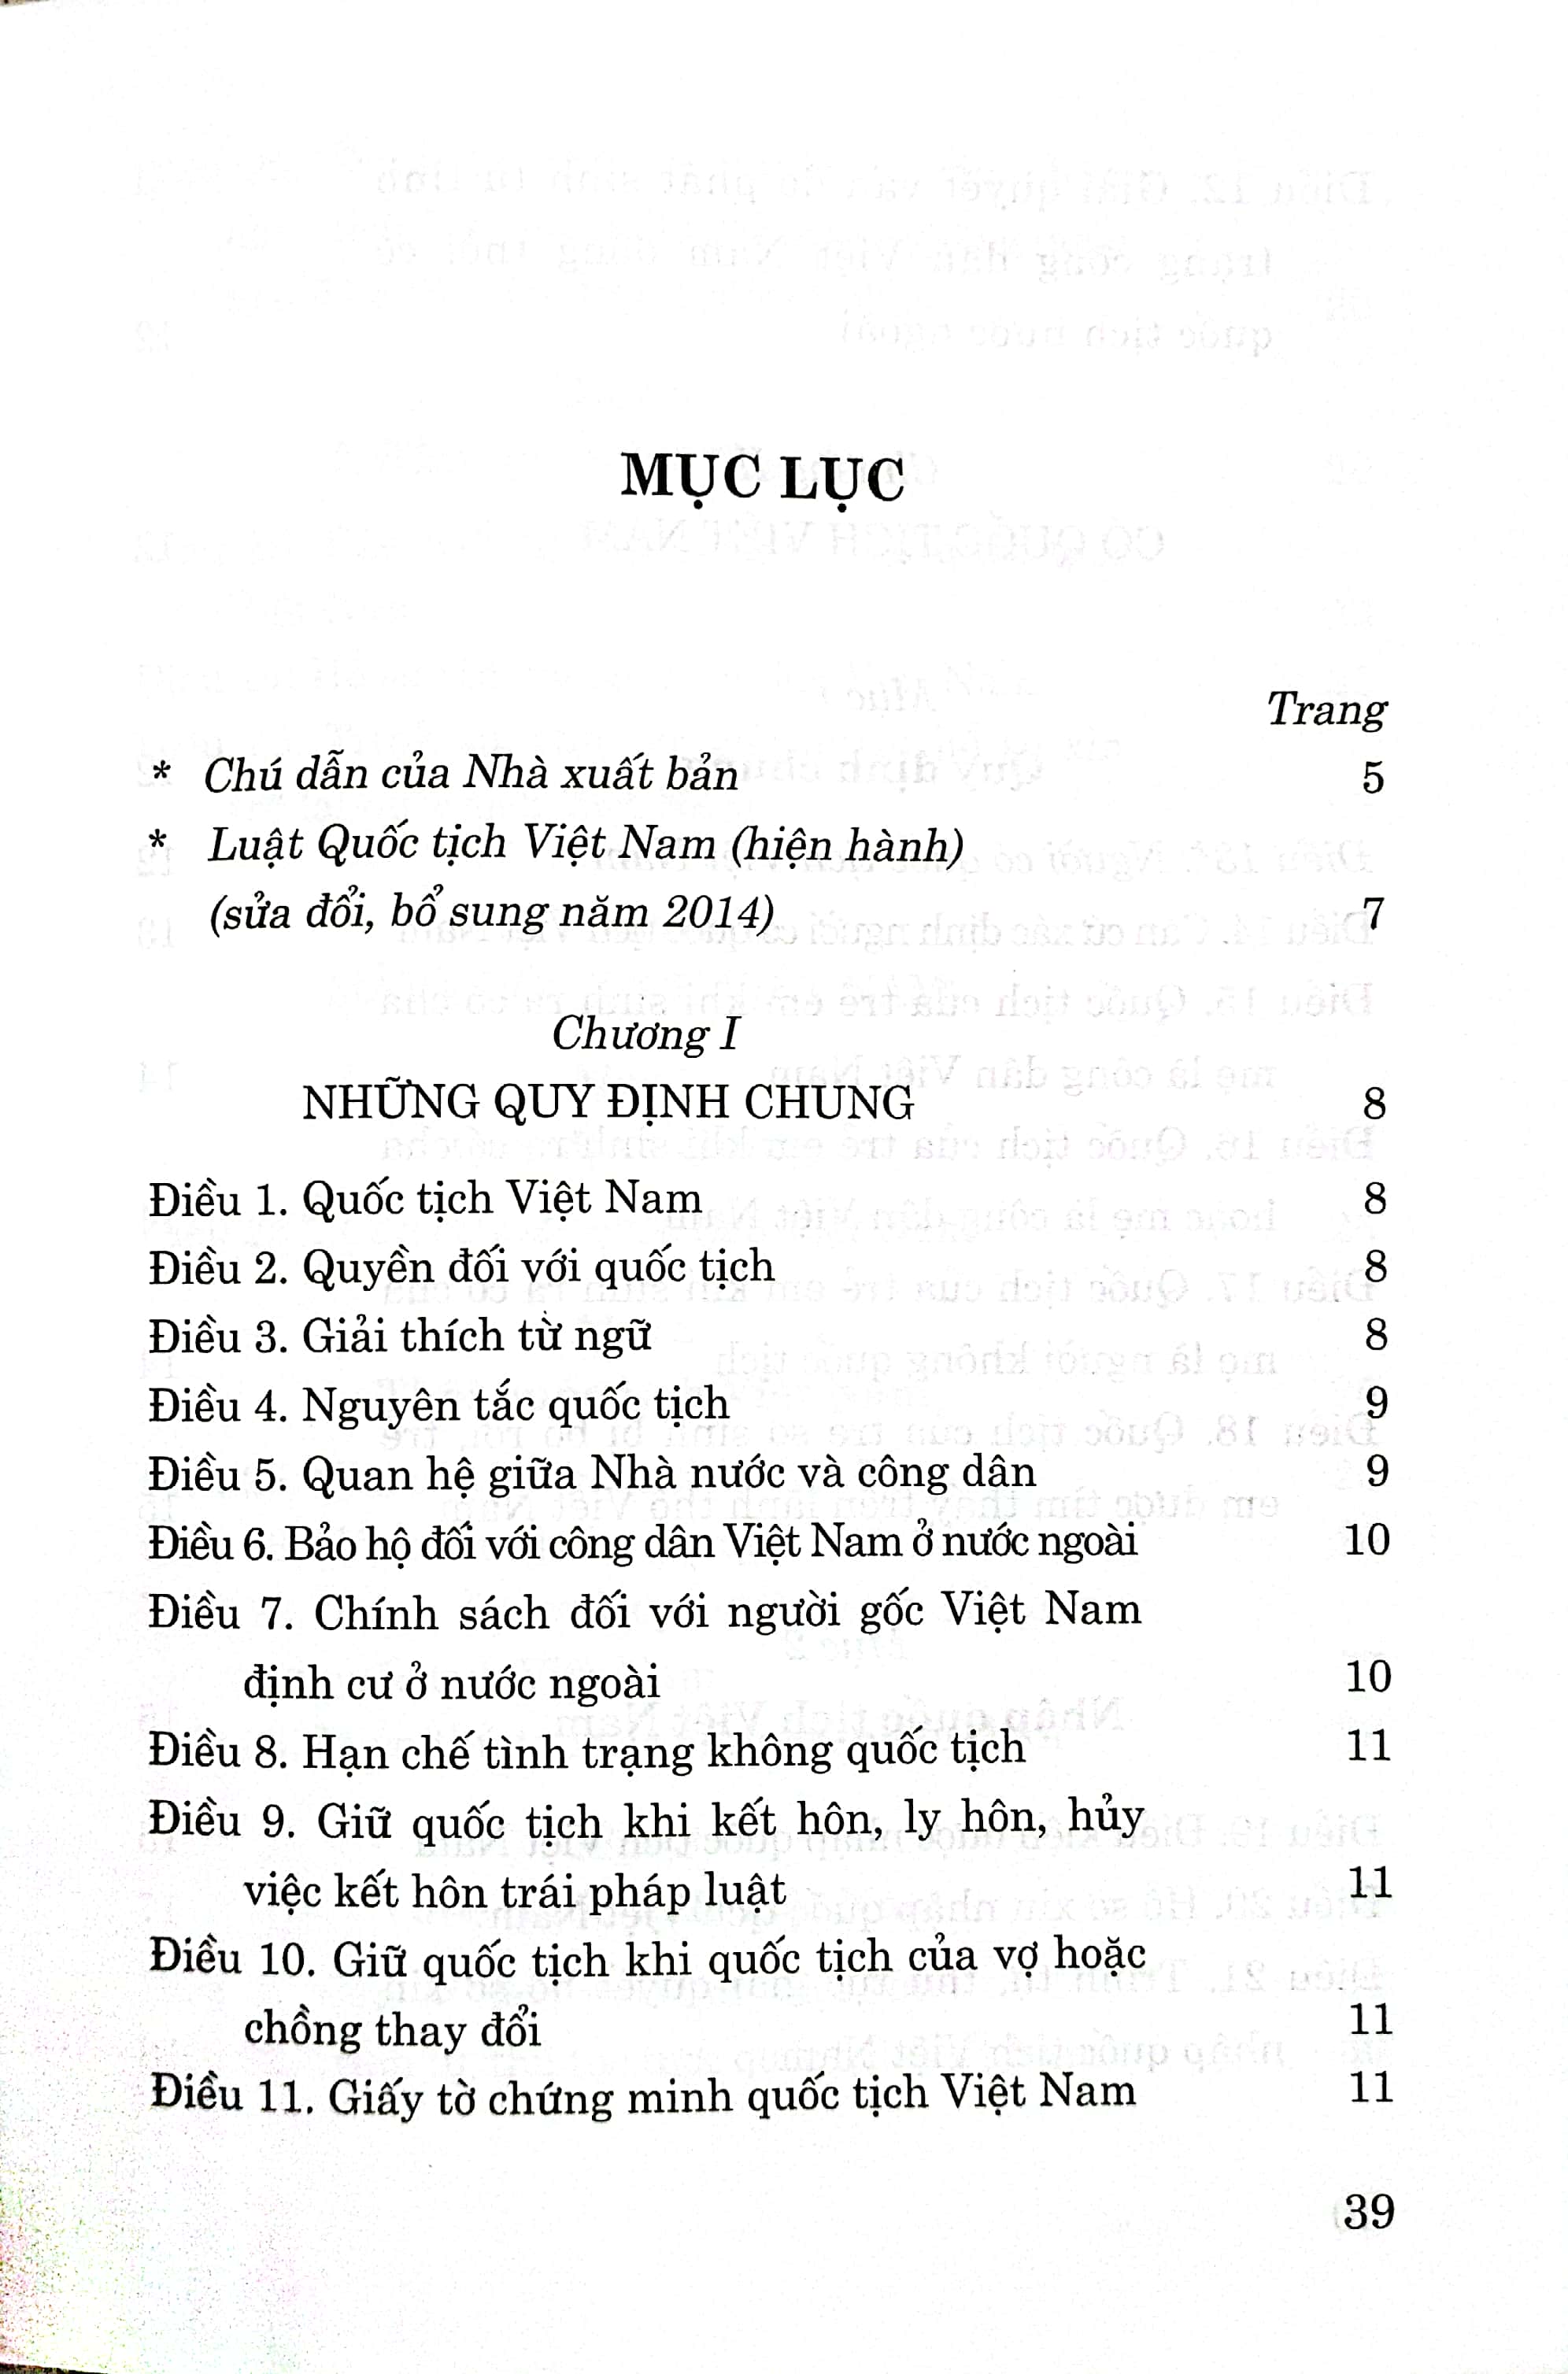 Luật Quốc tịch Việt Nam (Hiện hành) (Sửa đổi, bổ sung năm 2014)